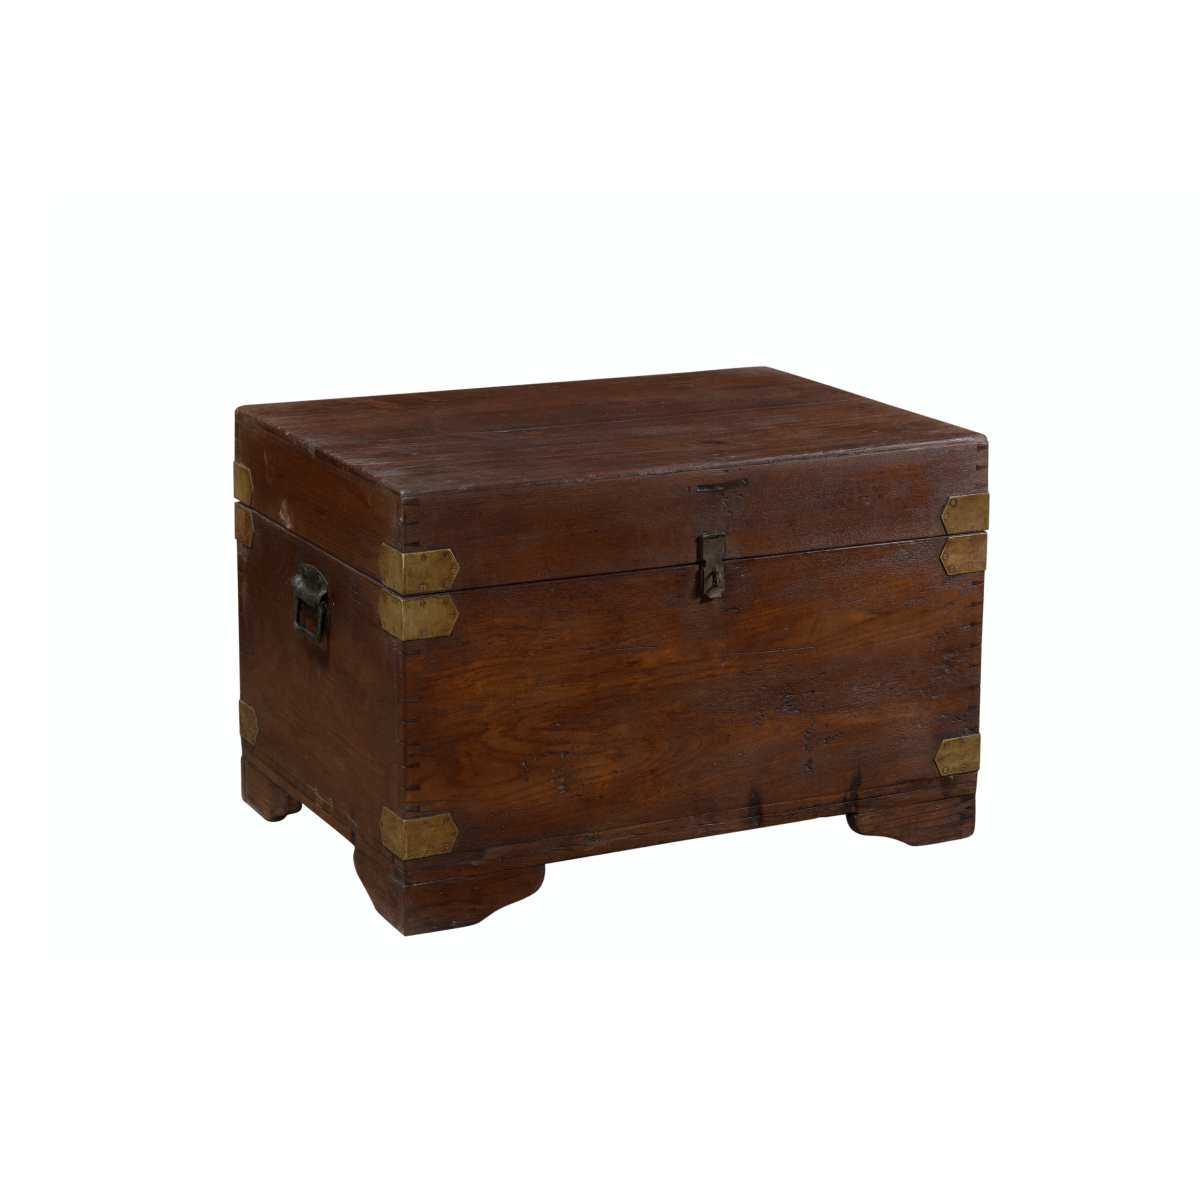 Dark Wooden Box w/ Brass Detailing